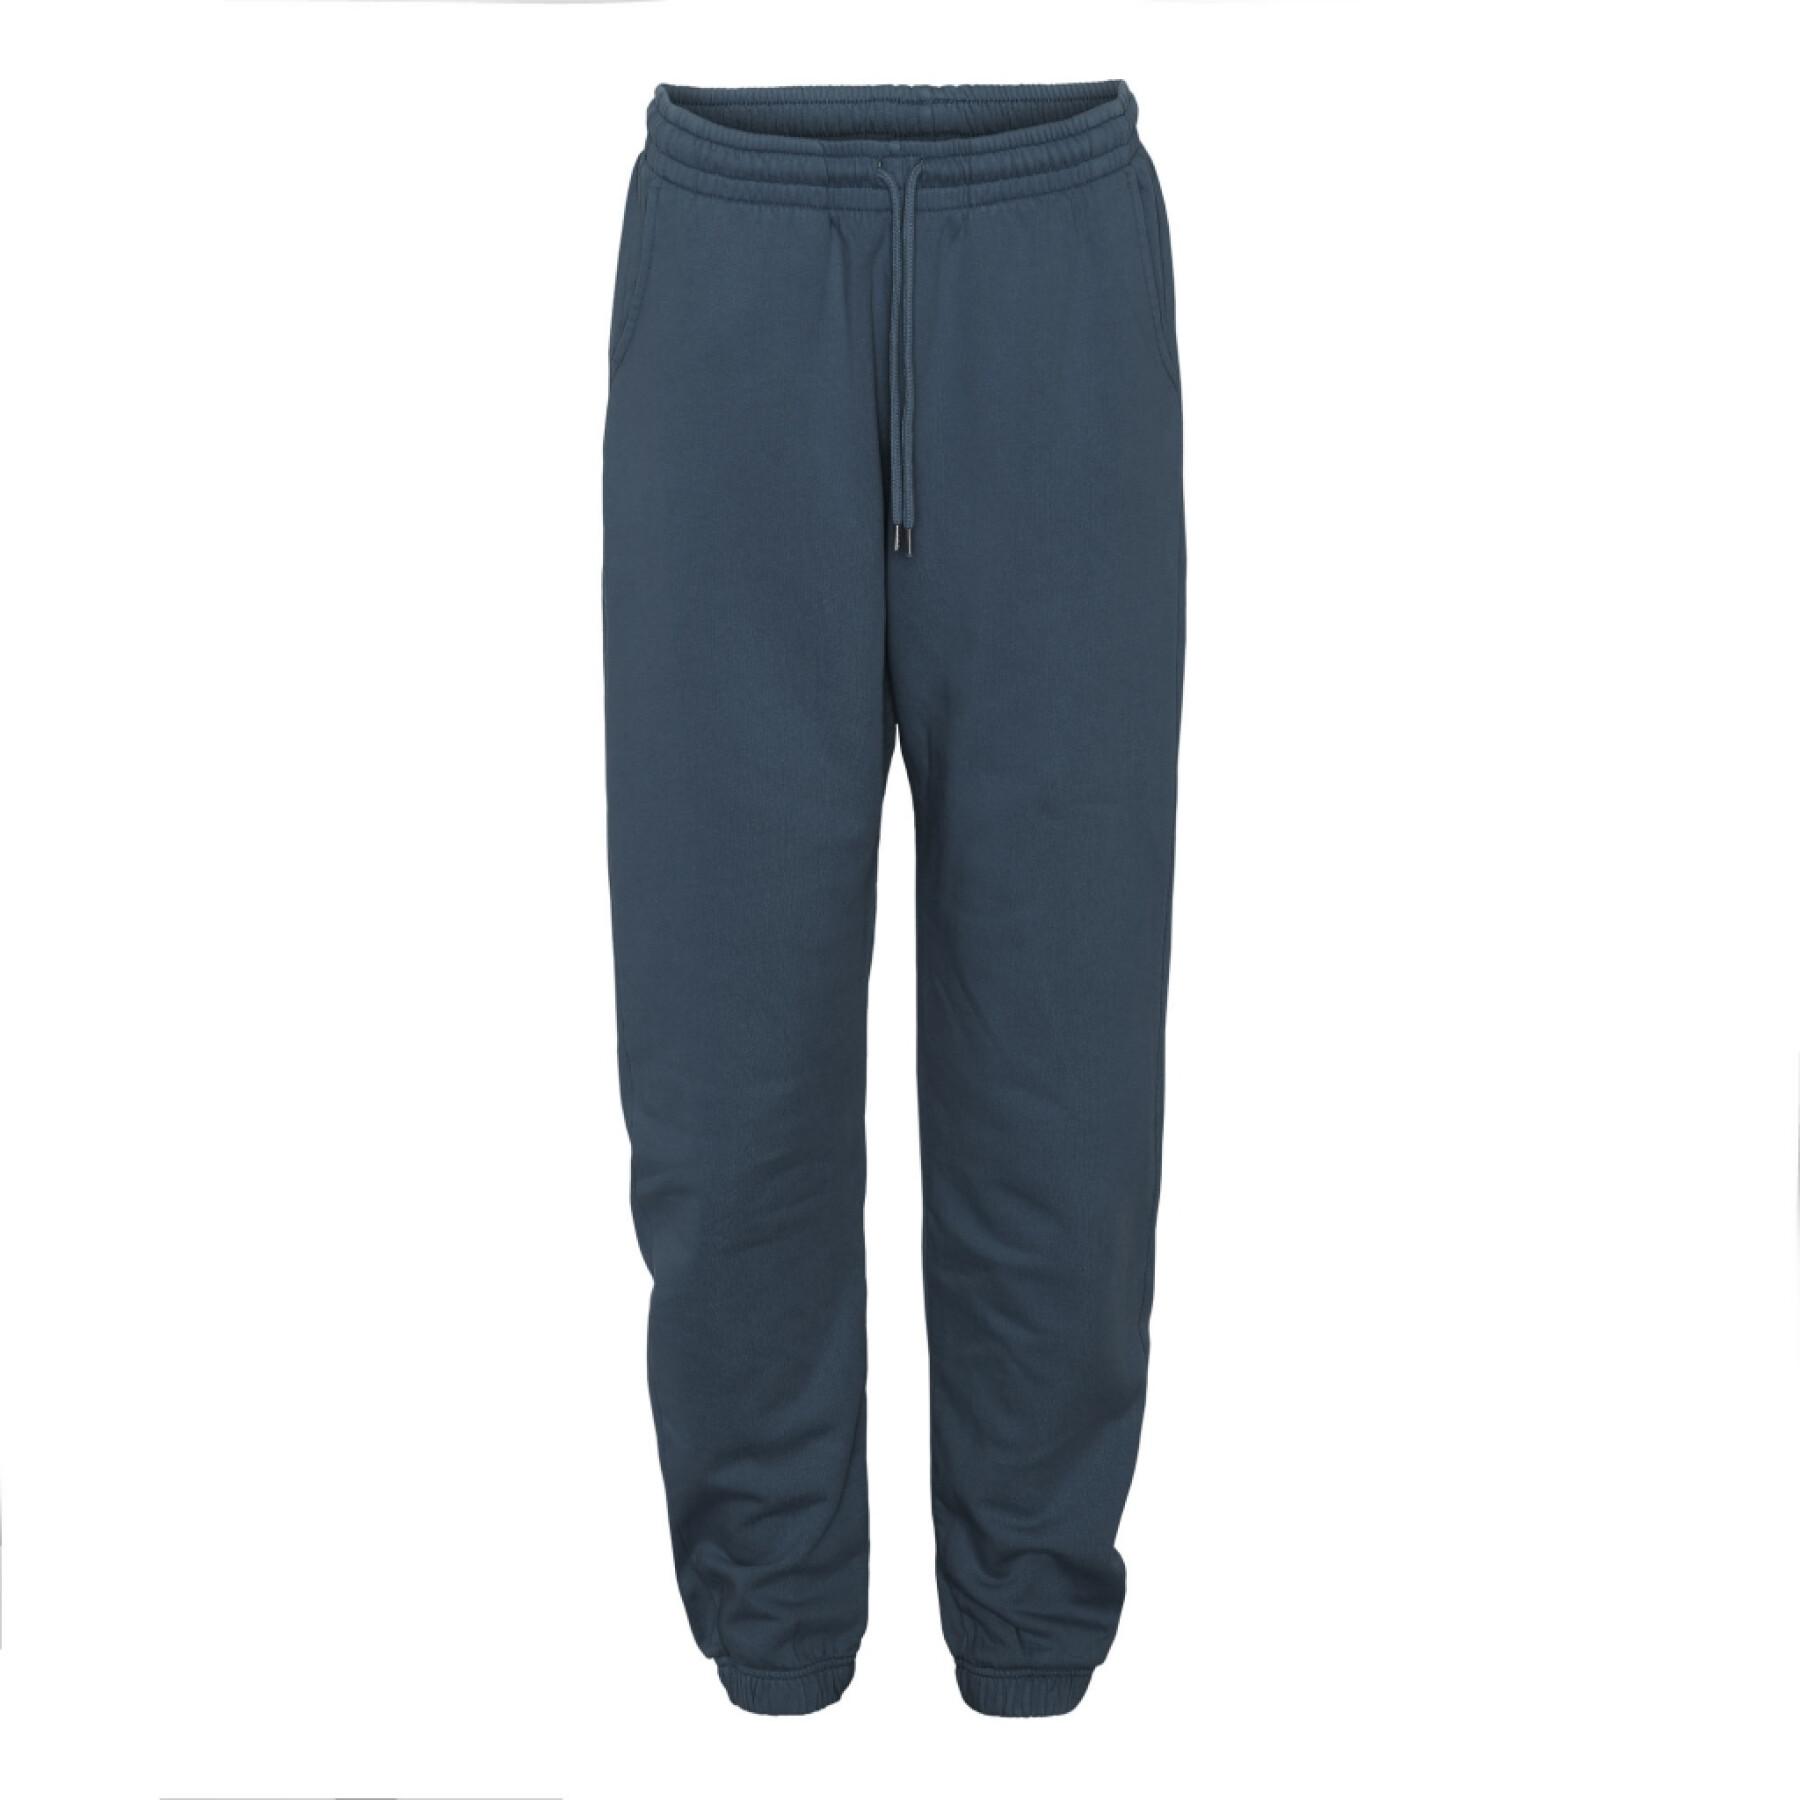 Pantalón de jogging Colorful Standard Organic azul oscuro